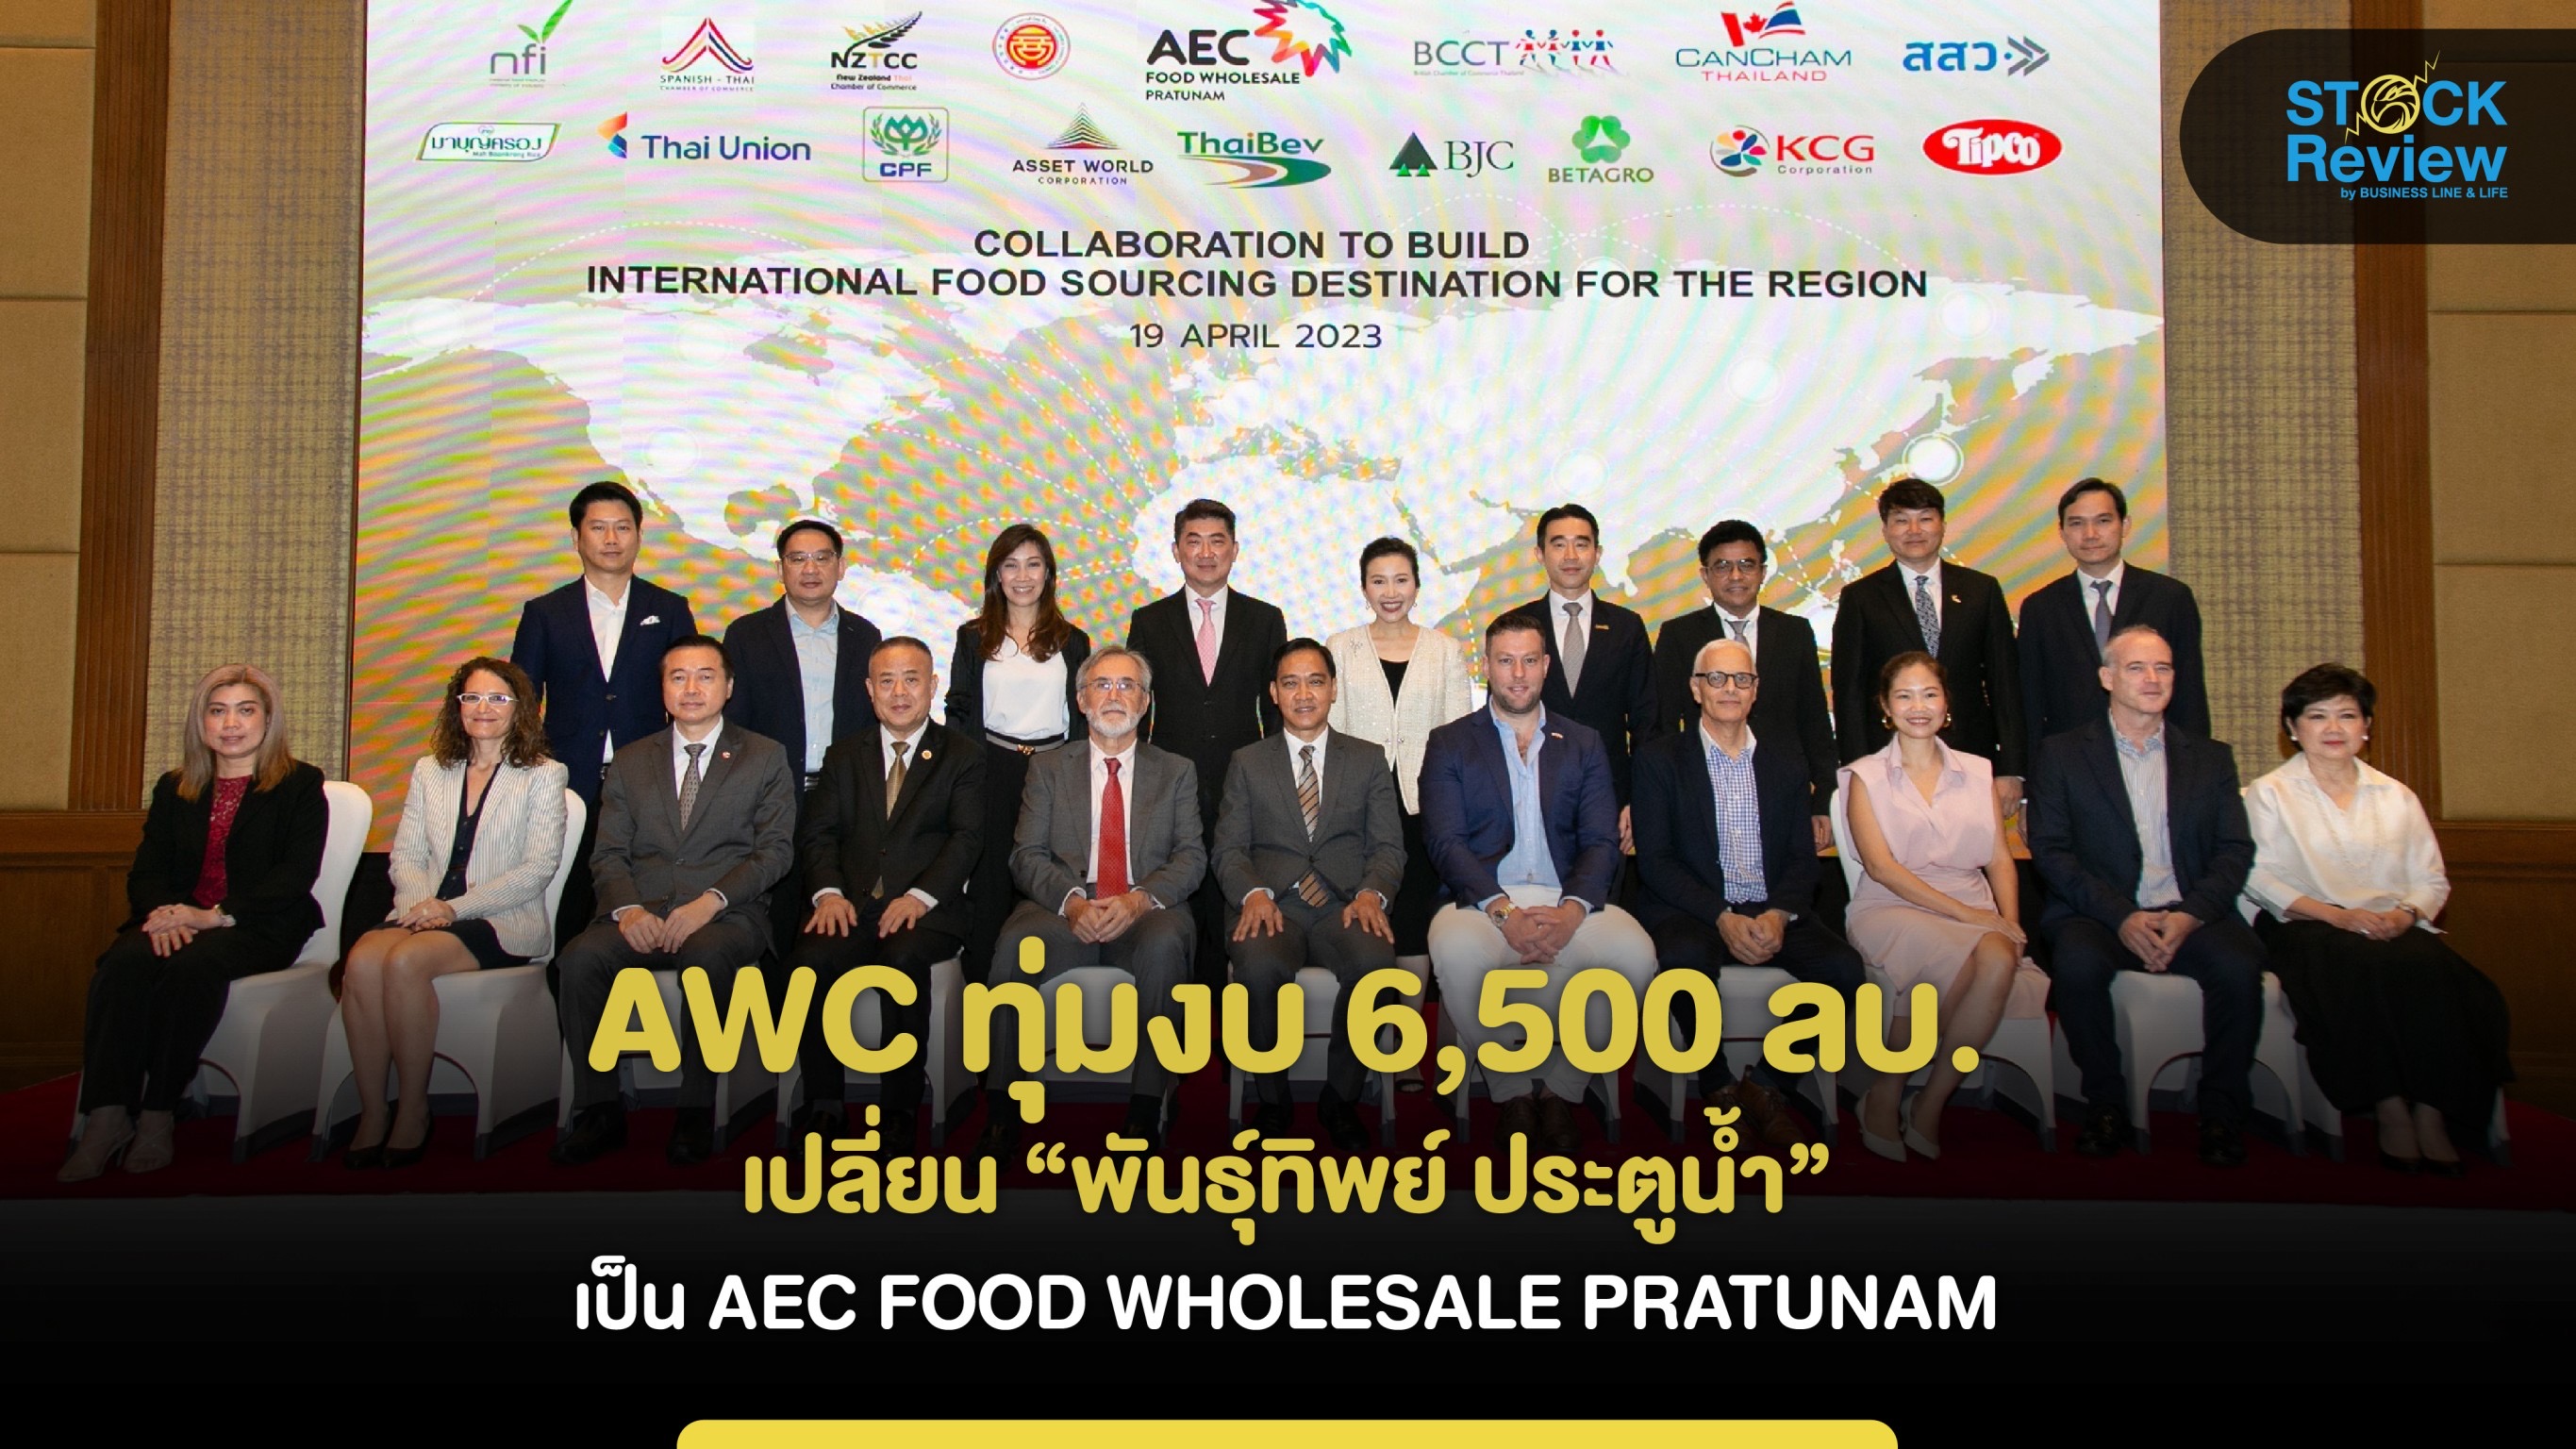 AWC ทุ่มงบ 6,500 ลบ. เปลี่ยน “พันธุ์ทิพย์ ประตูน้ำ”  เป็น AEC FOOD WHOLESALE PRATUNAM